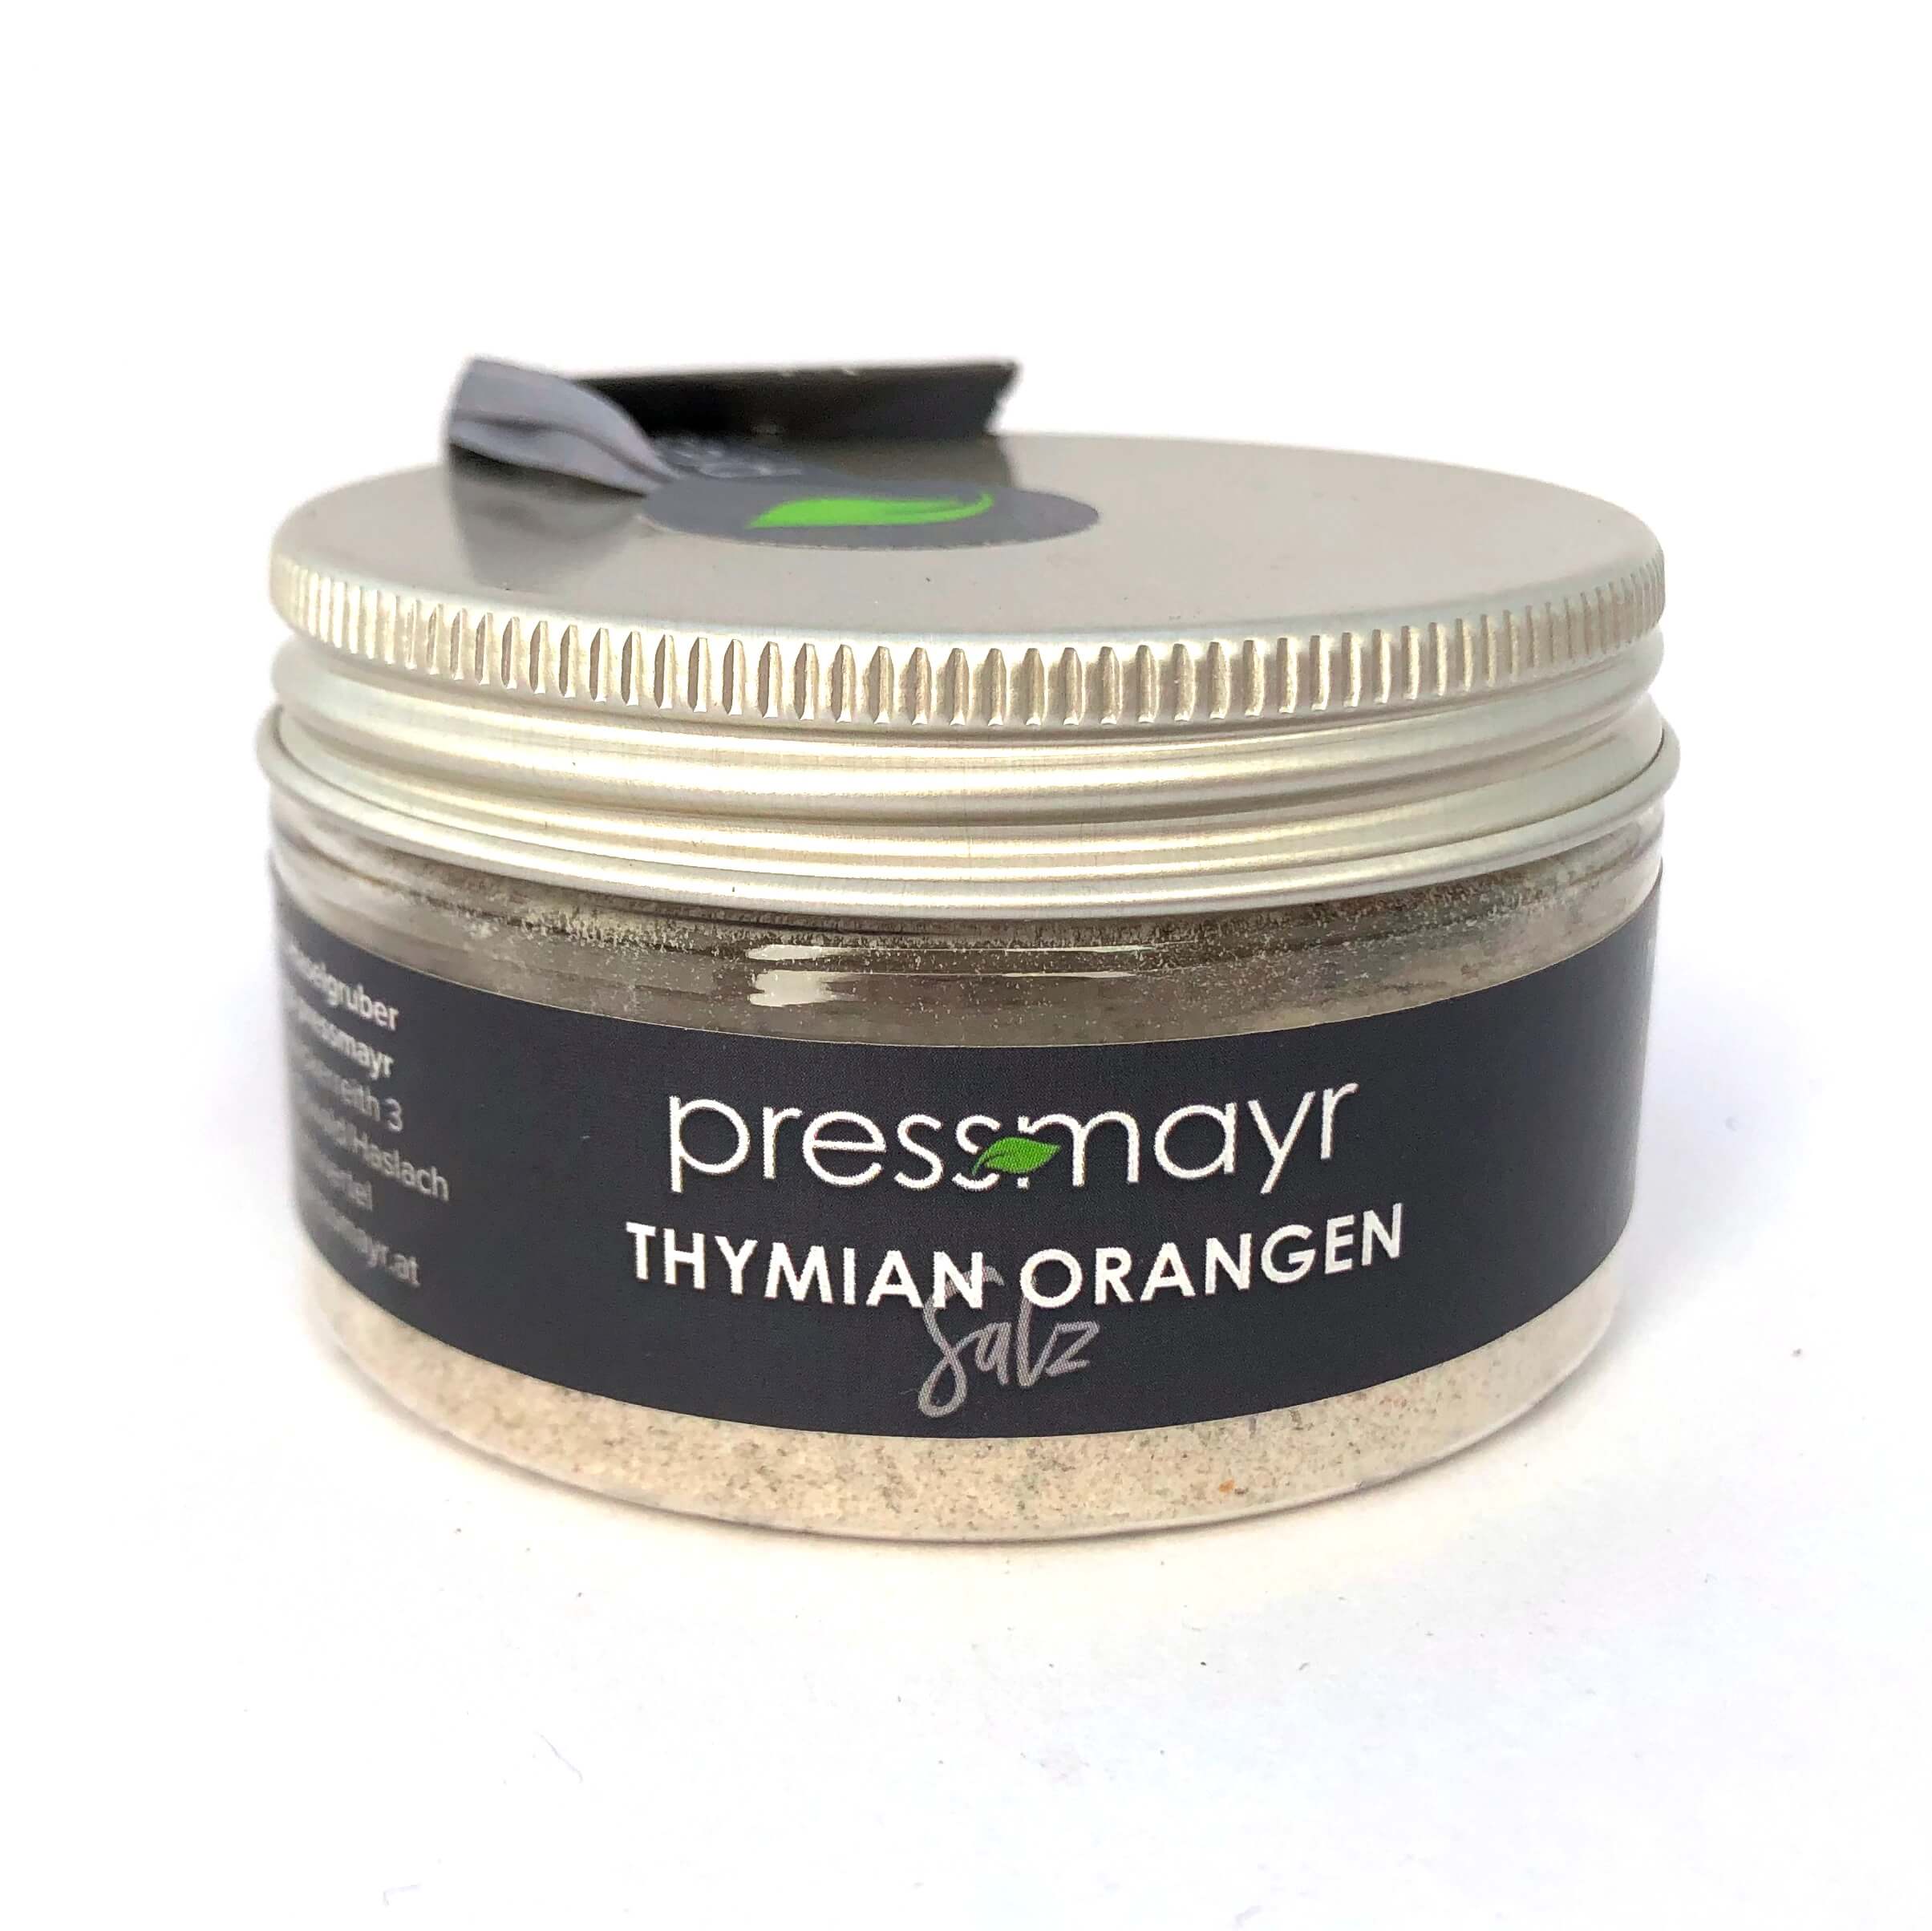 Thymian-Orangen Salz | Pressmayr